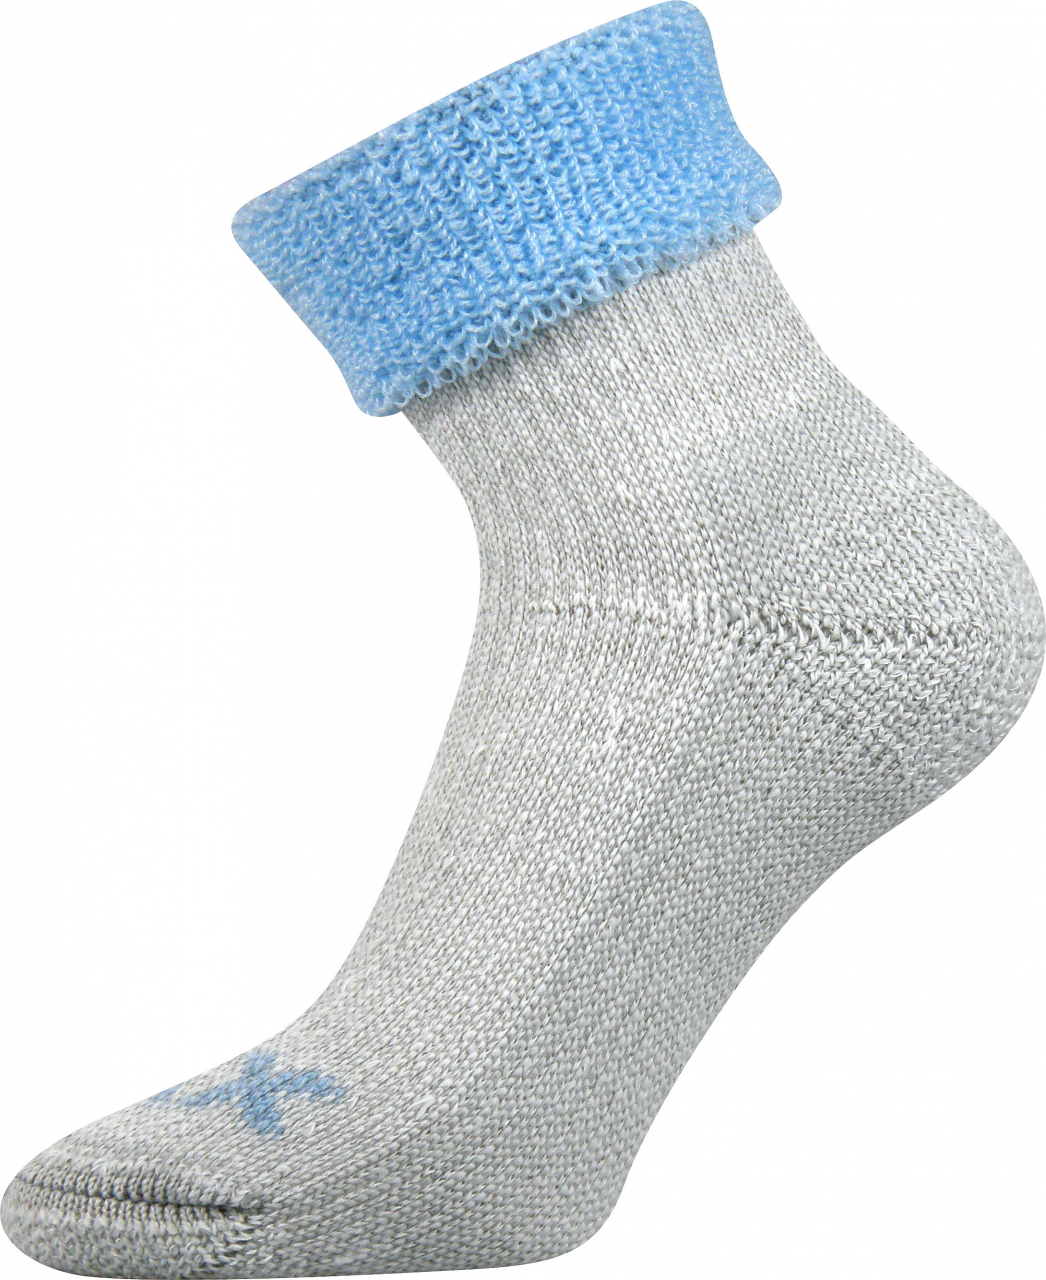 Ponožky dámské thermo Voxx Quanta - šedé-světle modré, 39-42